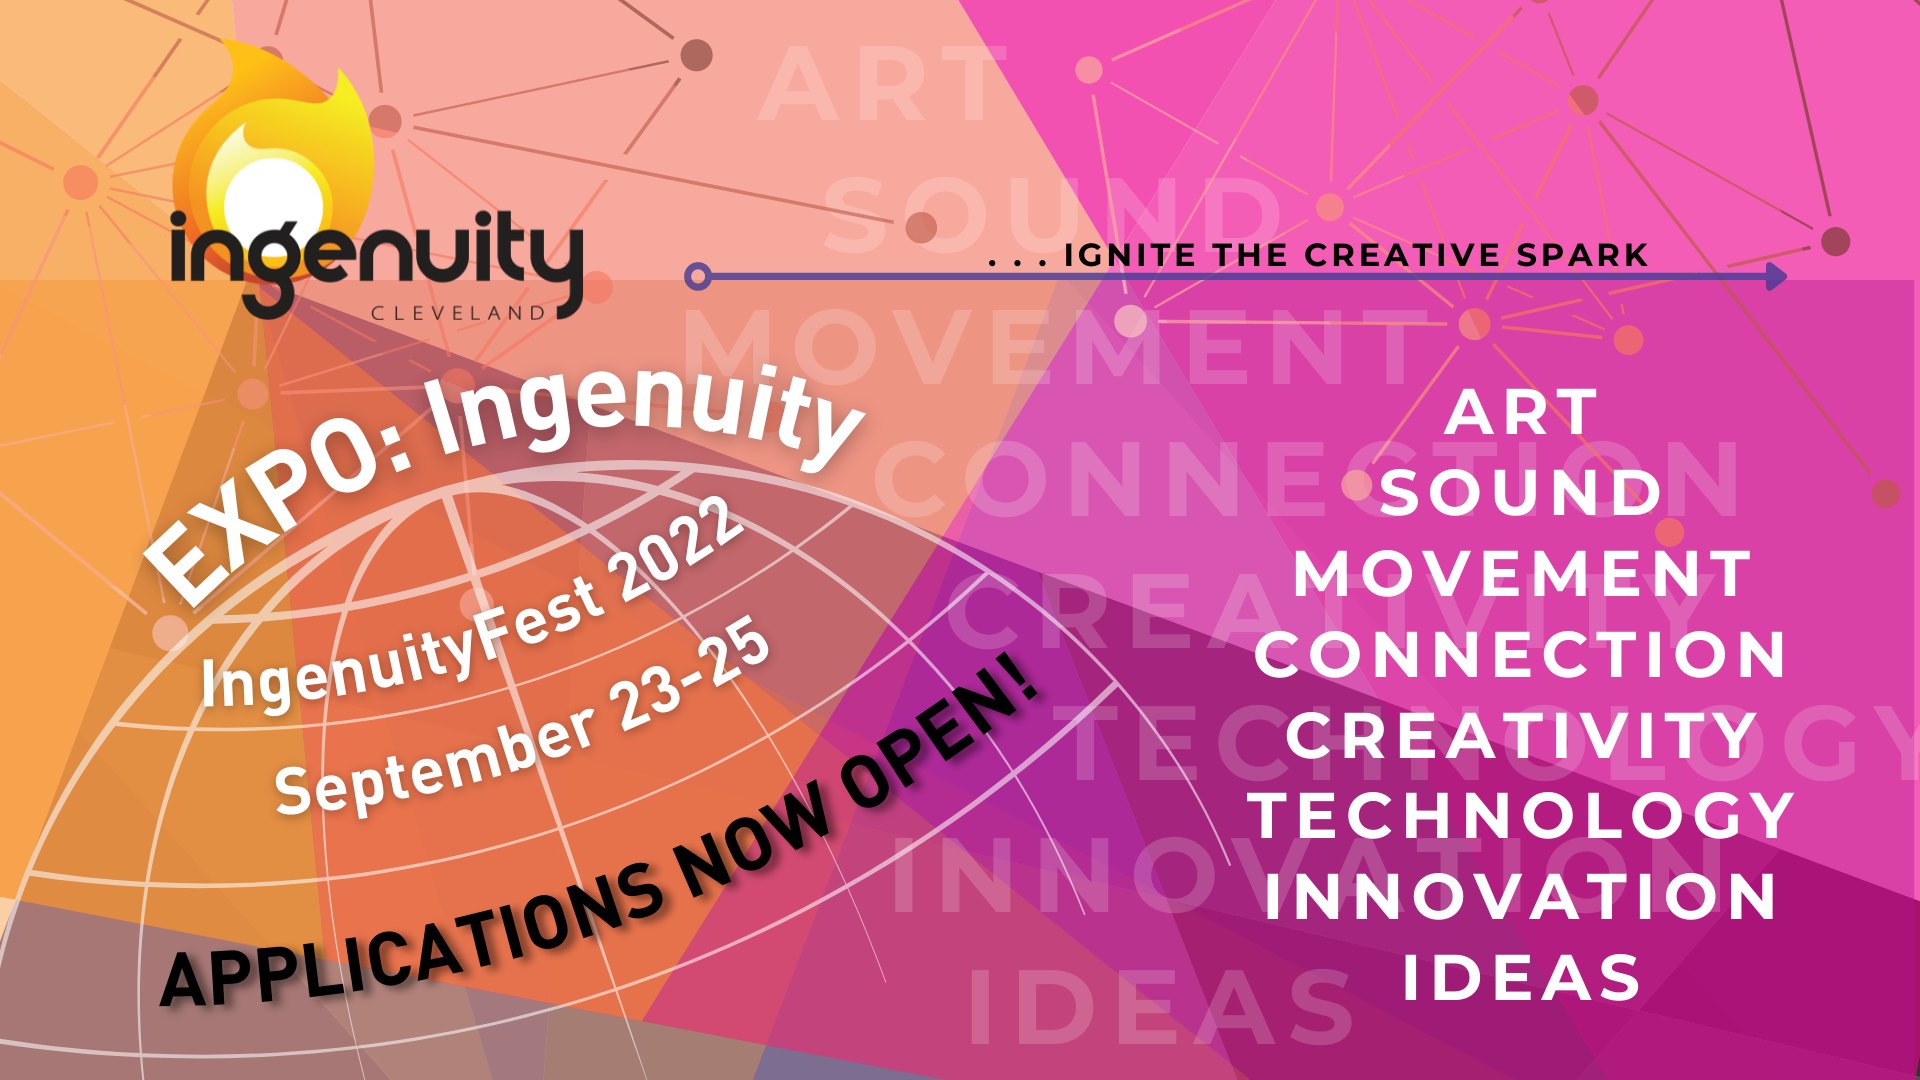 IngenuityFest 2022, Ingenuity Cleveland at Ingenuity Cleveland, Cleveland OH, Festivals